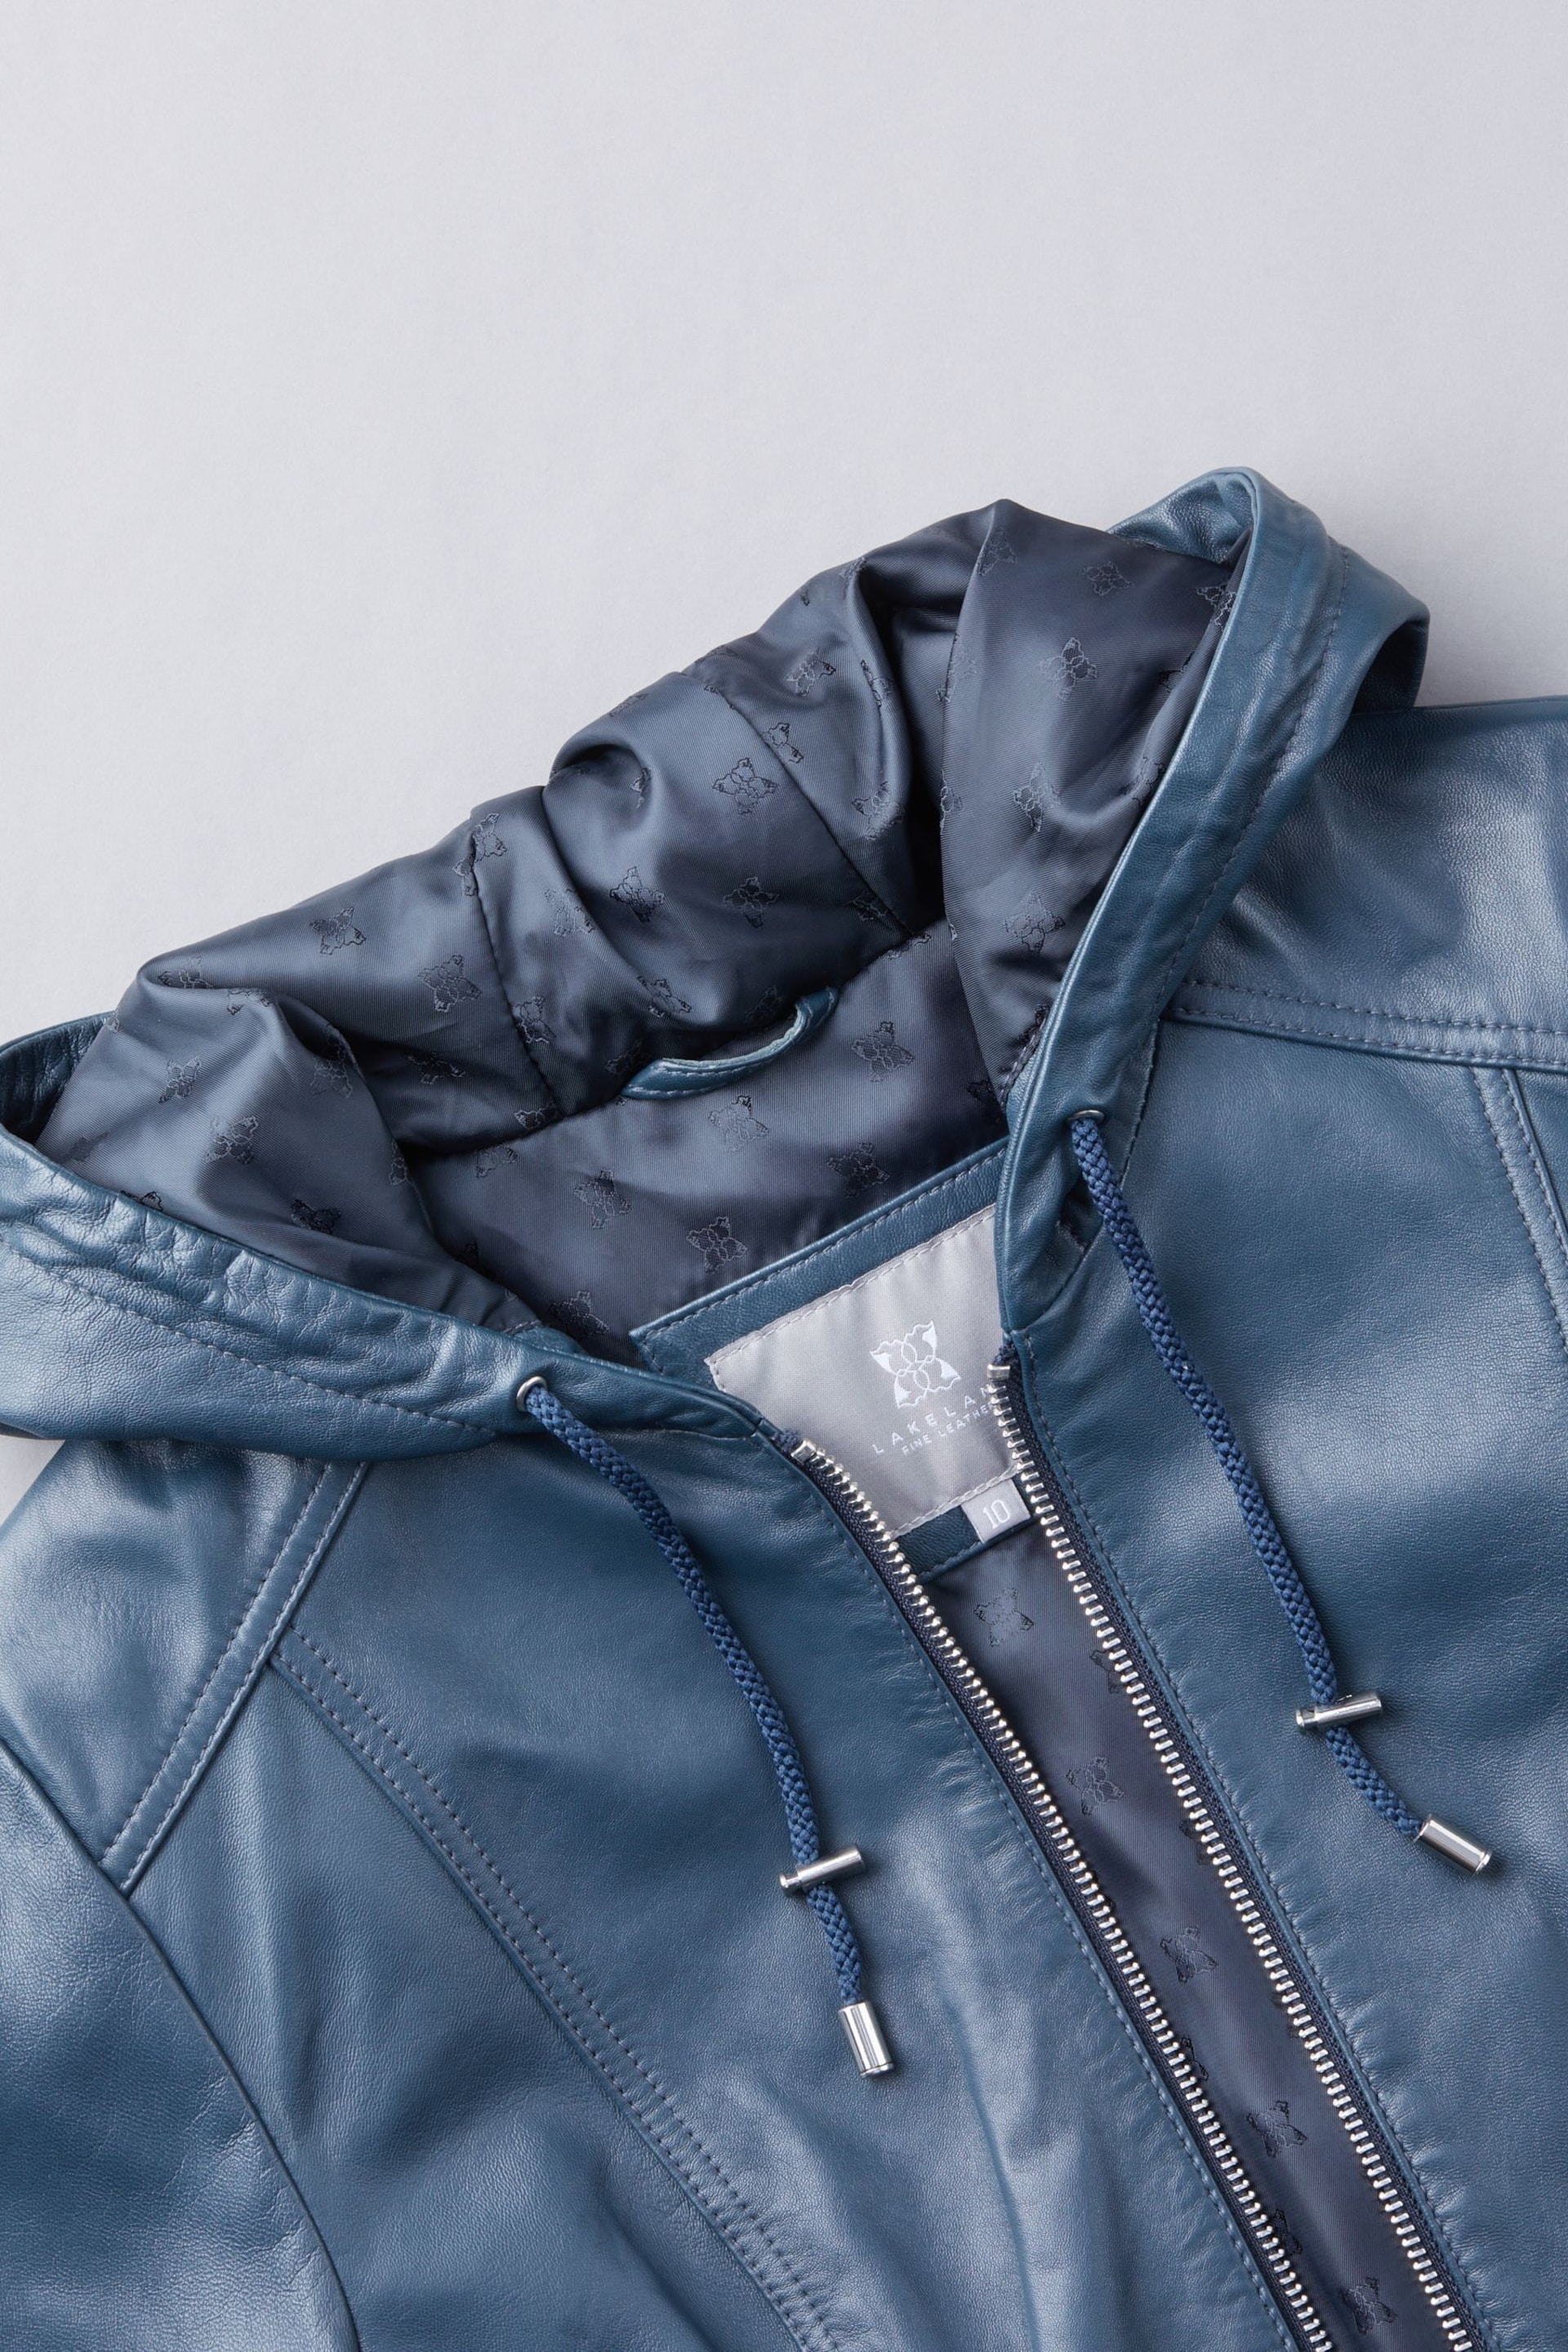 Lakeland Leather Fresh Navy Abbeyville Hooded Leather Jacket - Image 9 of 10